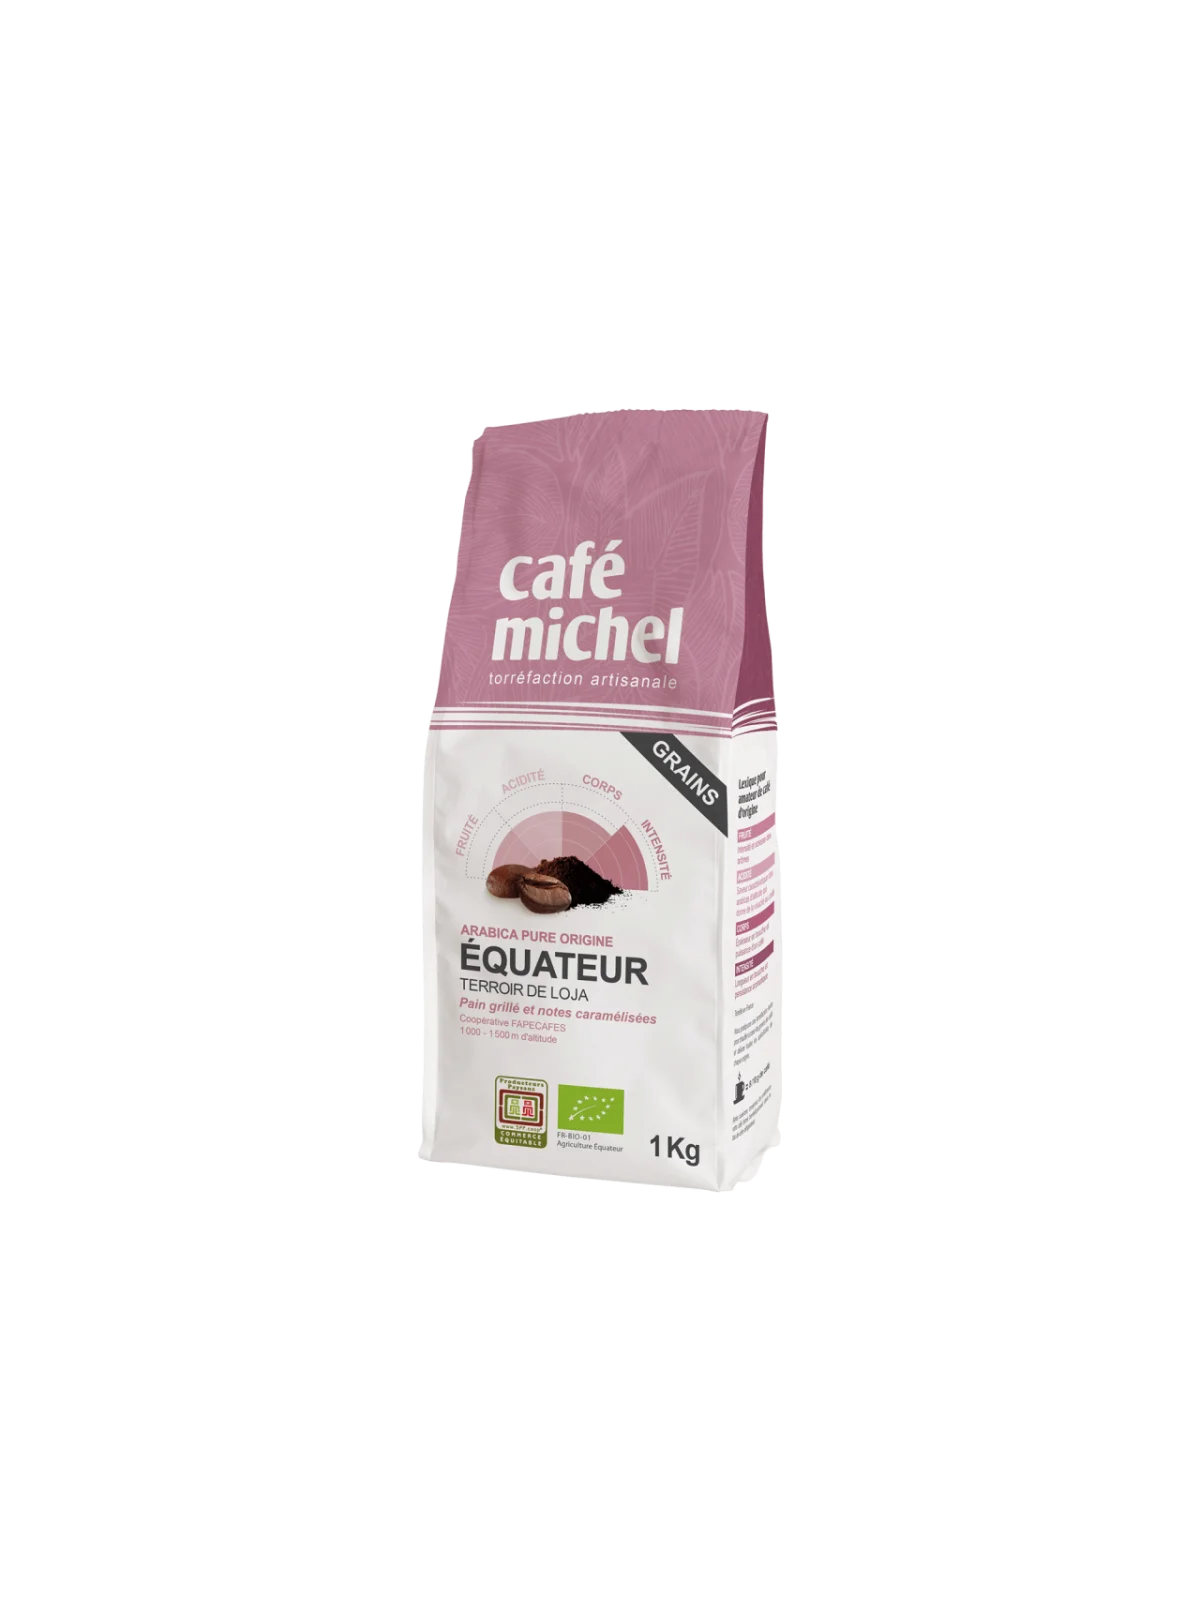 Equateur grains 1KG - Café Michel